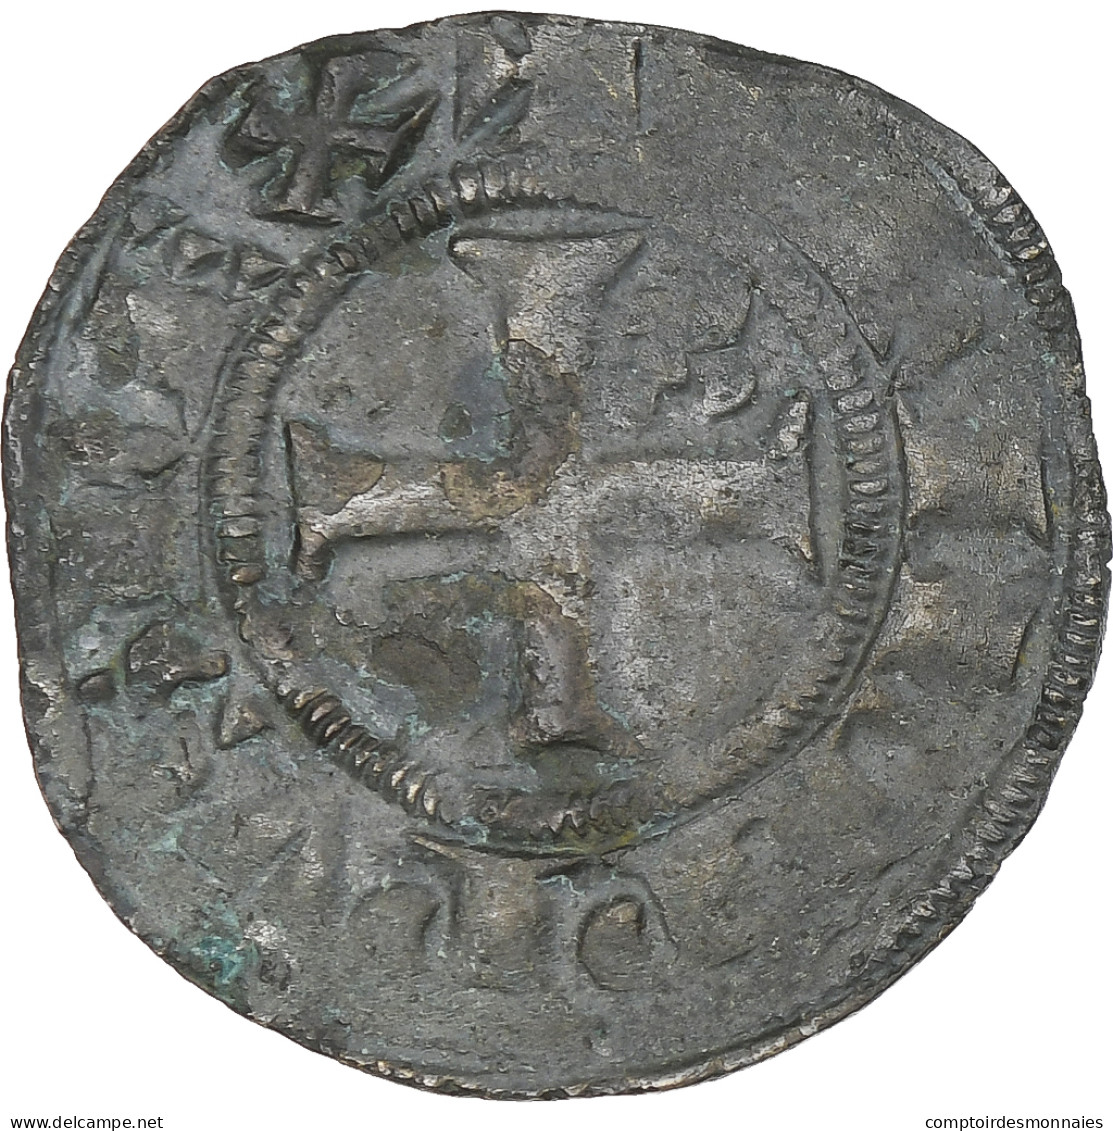 France, Philippe IV Le Bel, Double Tournois, 1295-1303, TB+, Billon - 1285-1314 Philippe IV Le Bel